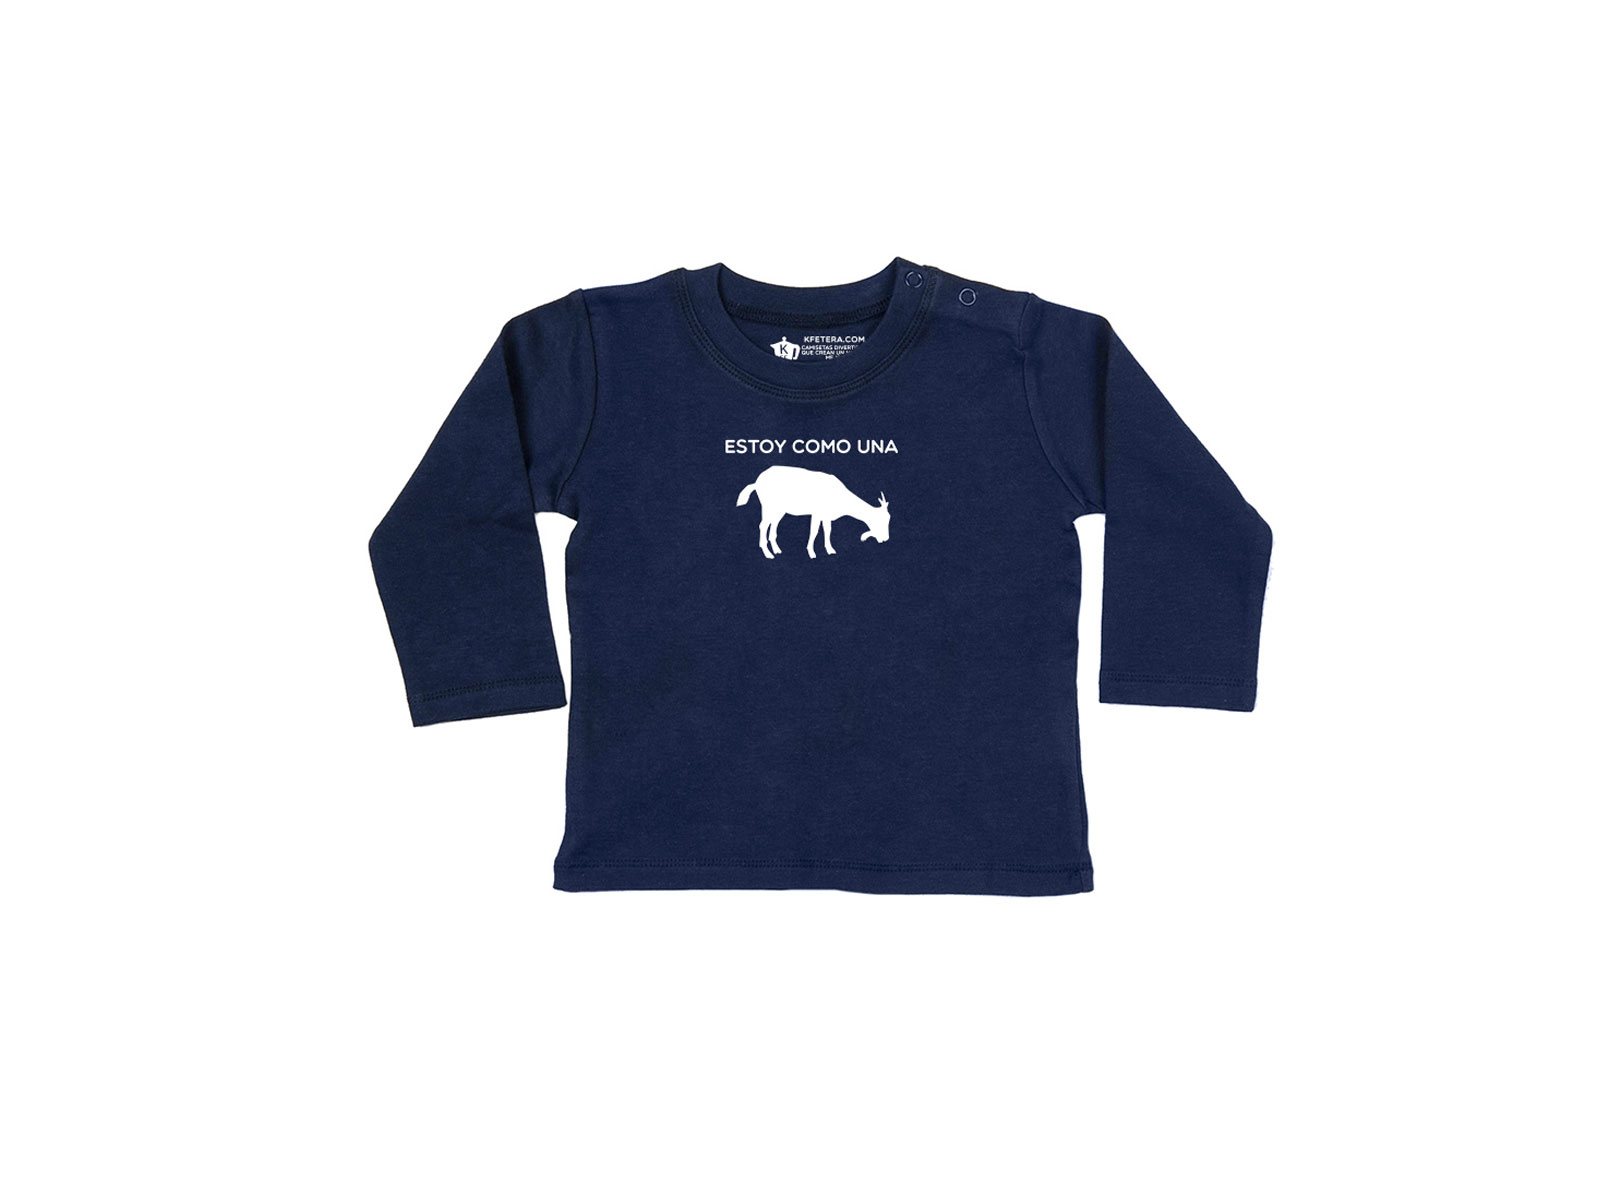 Tregua maravilloso Temporizador Estoy como una cabra - Camiseta manga larga bebé (azul navy) - Kfetera